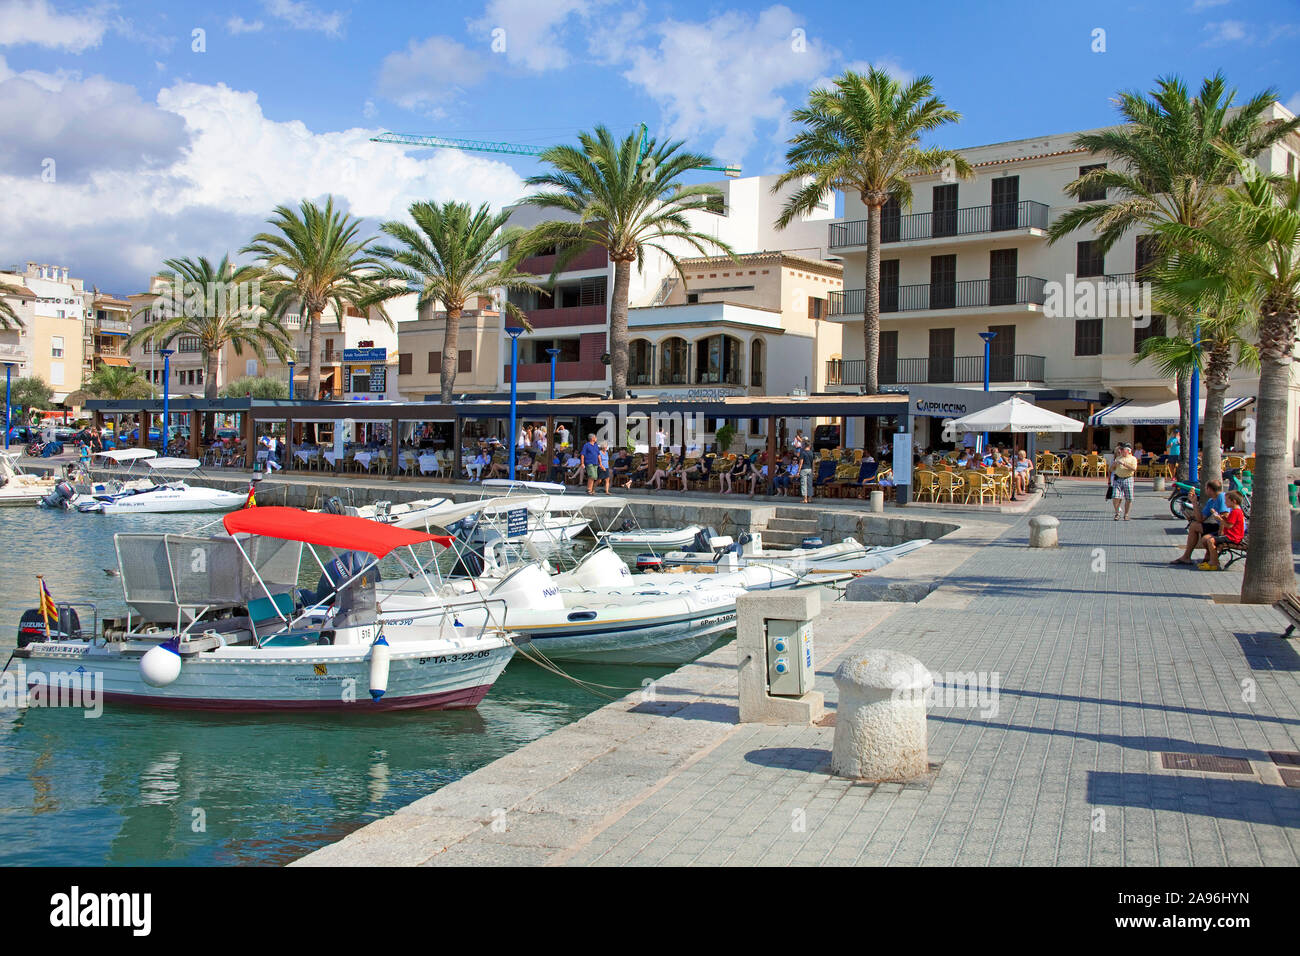 Passeggiata del porto e del molo del porto d'Andtratx, Andratx, Maiorca, isole Baleari, Spagna Foto Stock